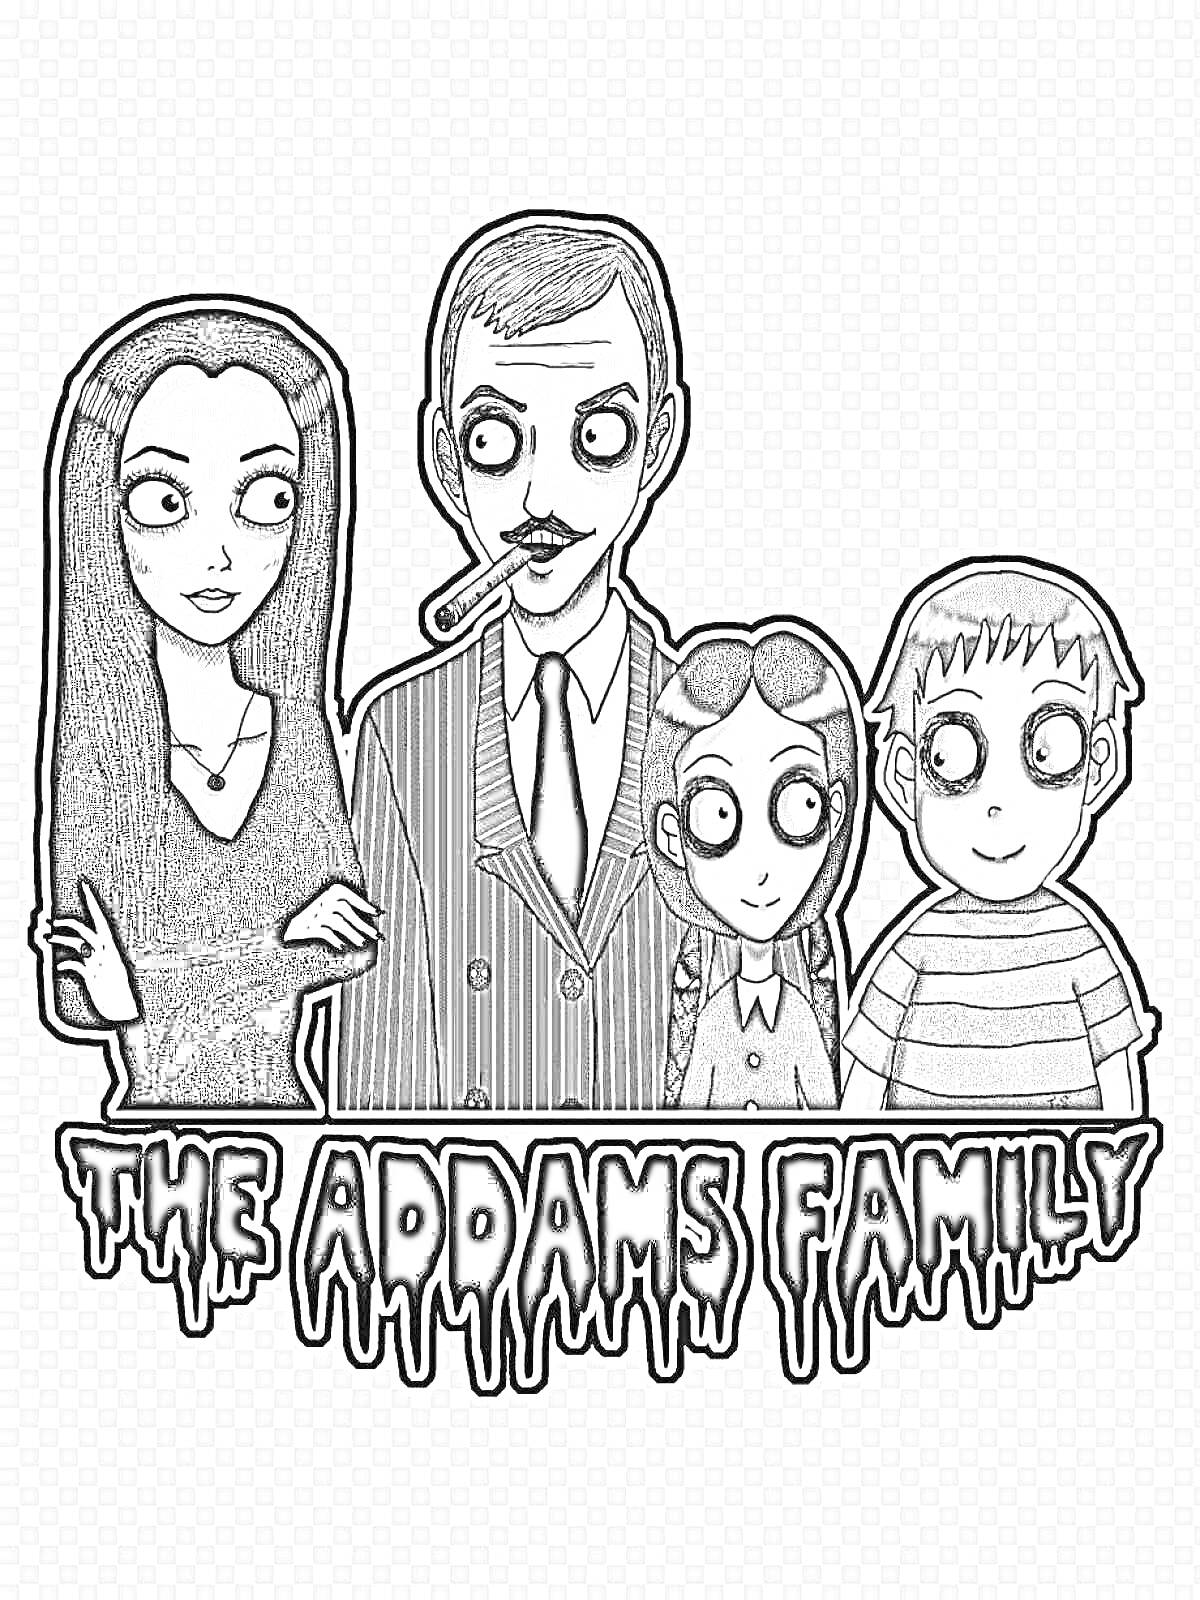 Раскраска Семейный портрет семейки Аддамс: женщина с длинными черными волосами, мужчина с усами и сигарой, девочка с косичками, мальчик с короткими волосами в полосатой футболке